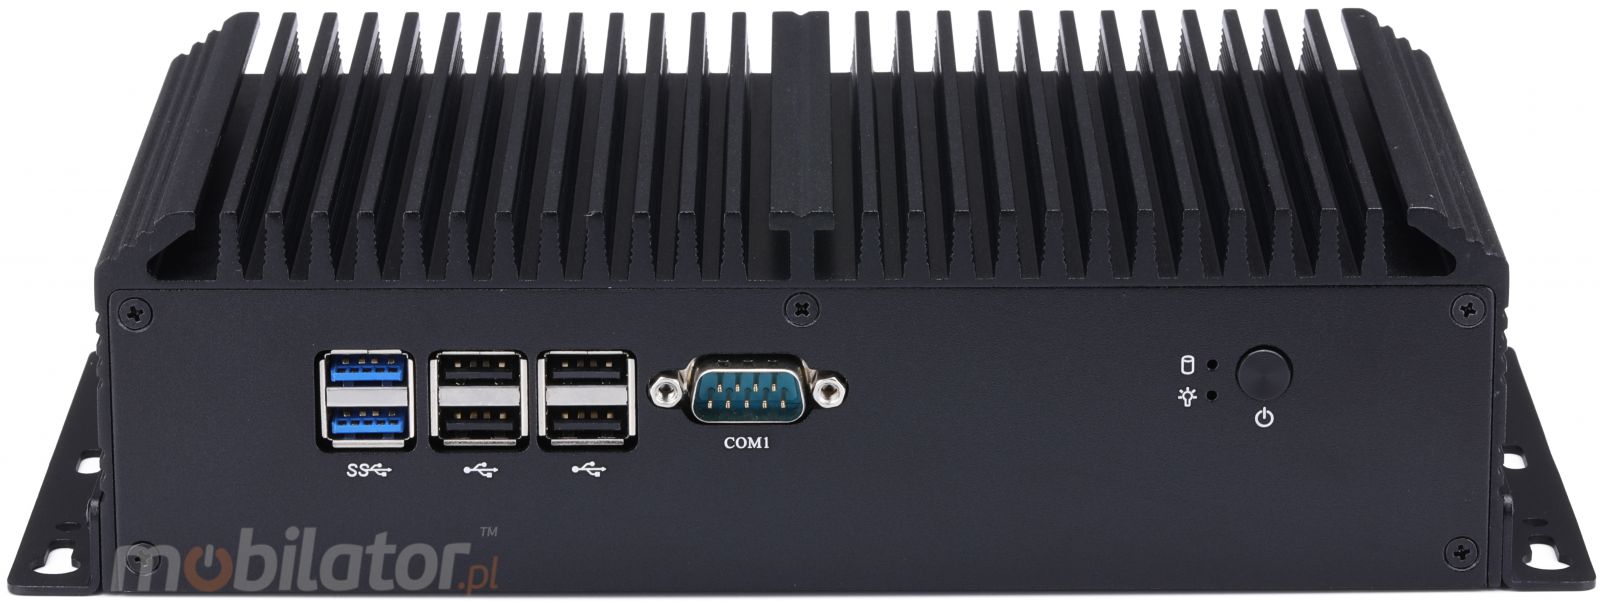 mBox X155 v.1 - Przemysowy MiniPC - procesor Intel Celeron 3865U - dysk M.2 - USB 3.0, 2x HDMI - Przd